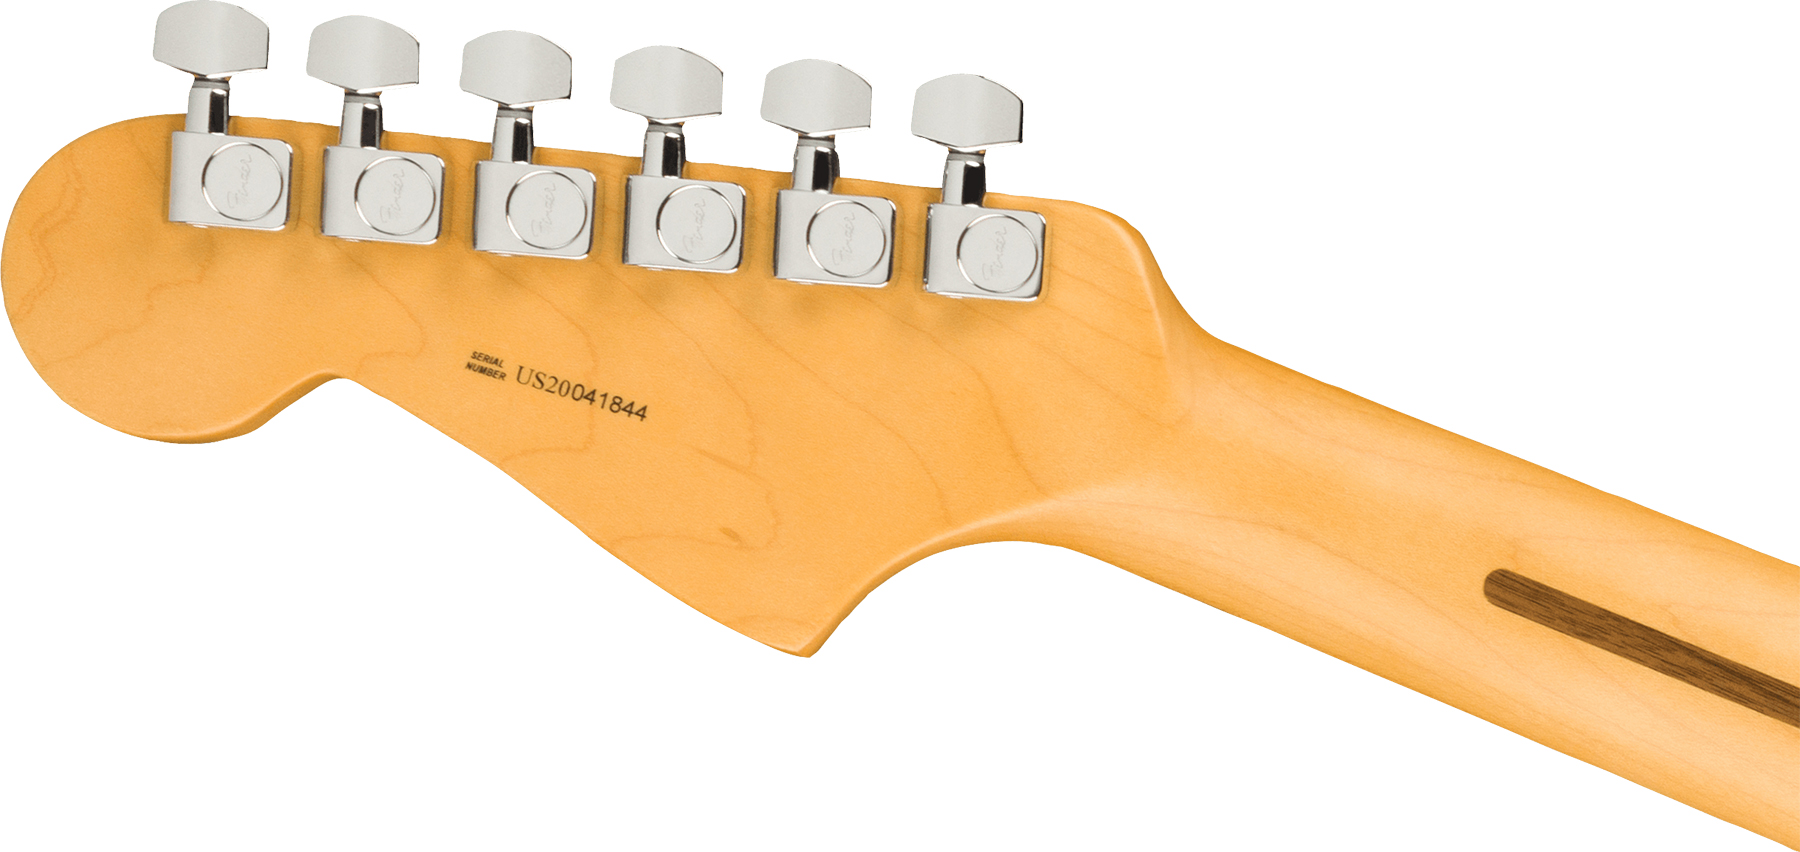 Fender Jazzmaster American Professional Ii Lh Gaucher Usa Rw - 3-color Sunburst - Linkshandige elektrische gitaar - Variation 3